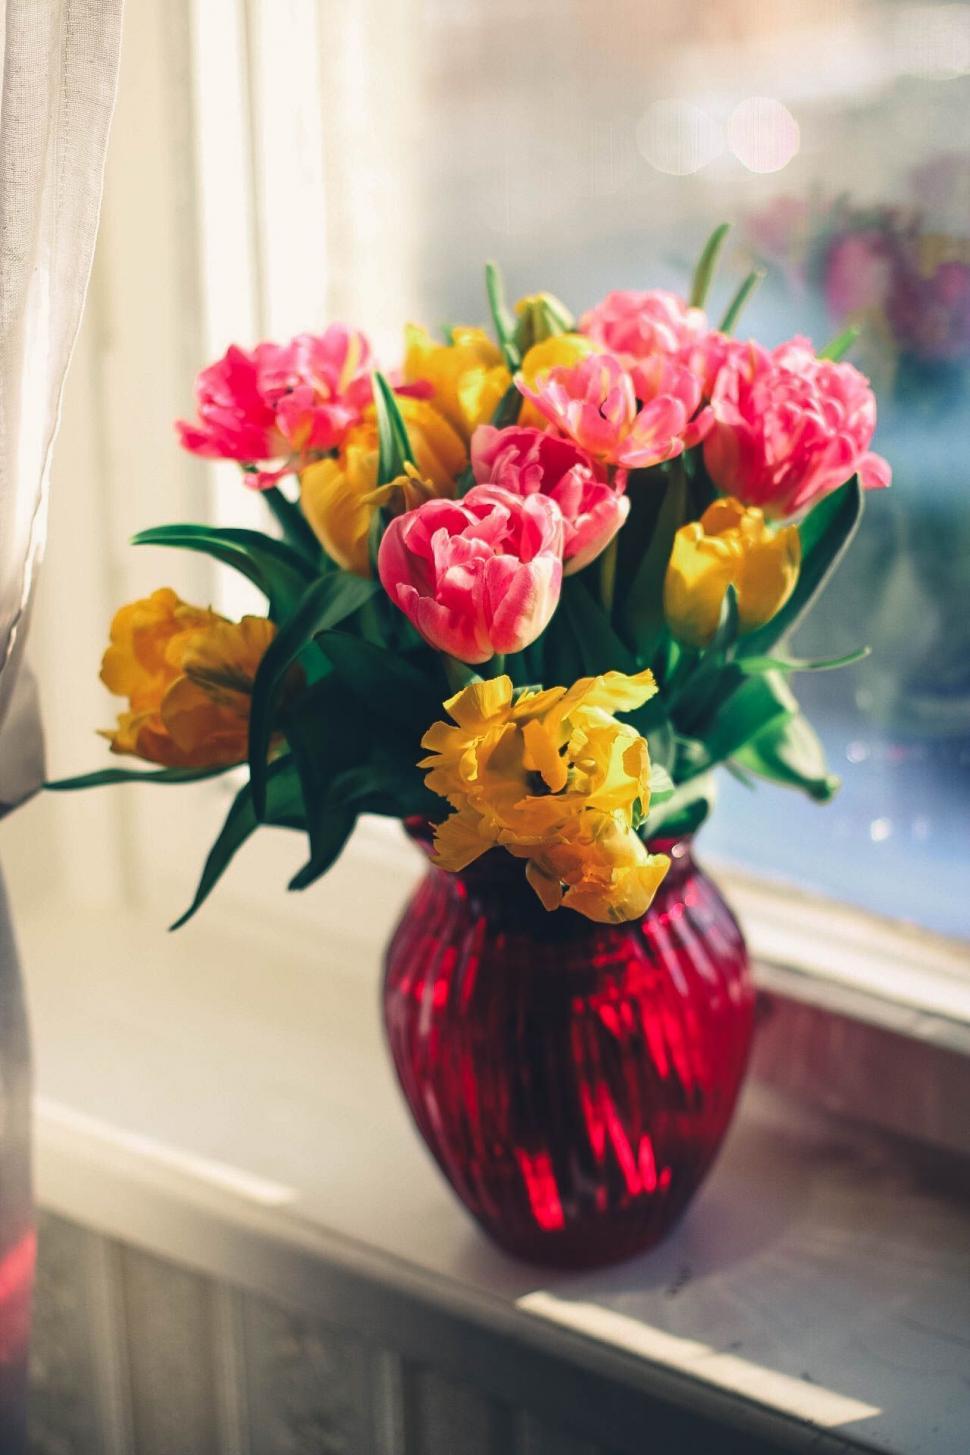 Free Image of Flowers in Vase  